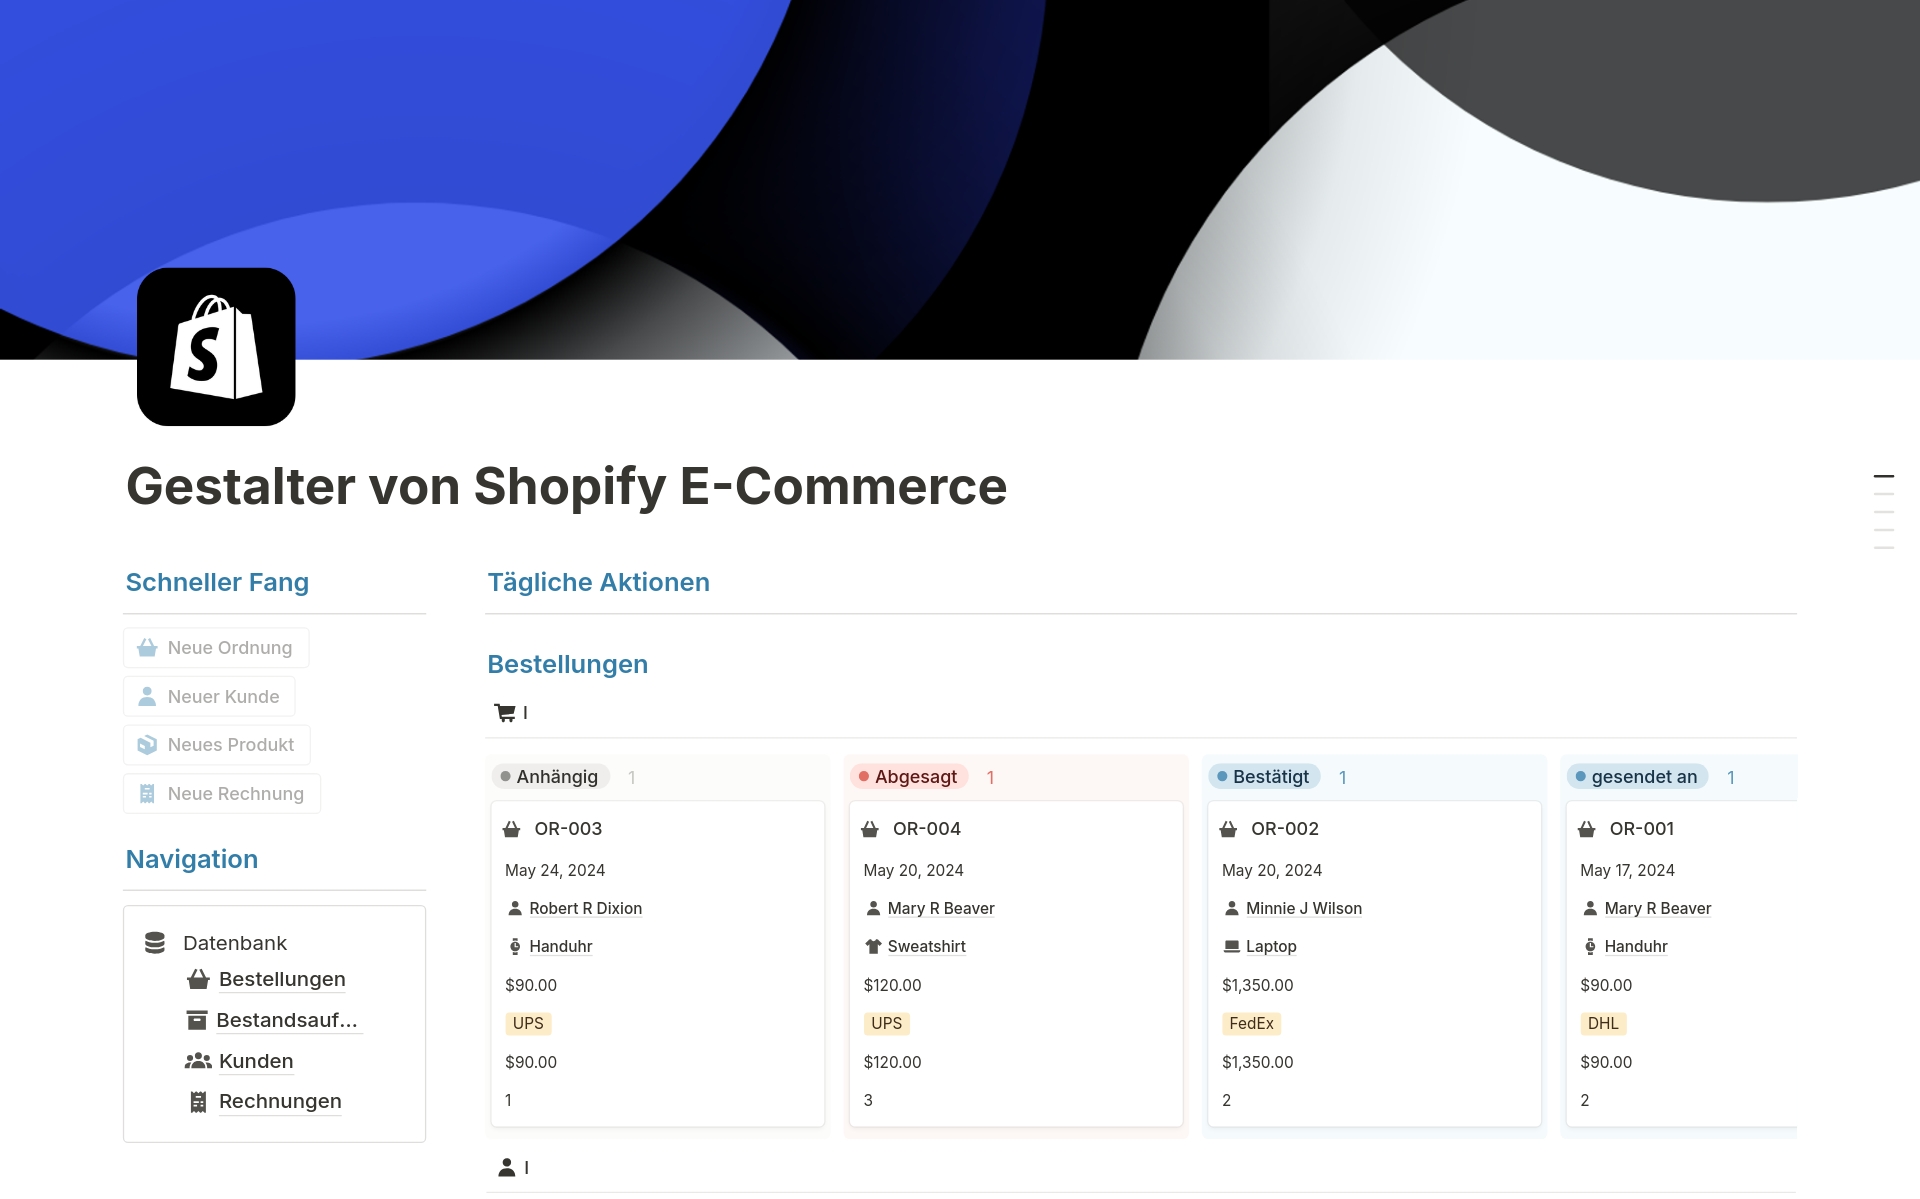 Meistern Sie Ihren E-Commerce: Das ultimative Notion Template für Shopify

